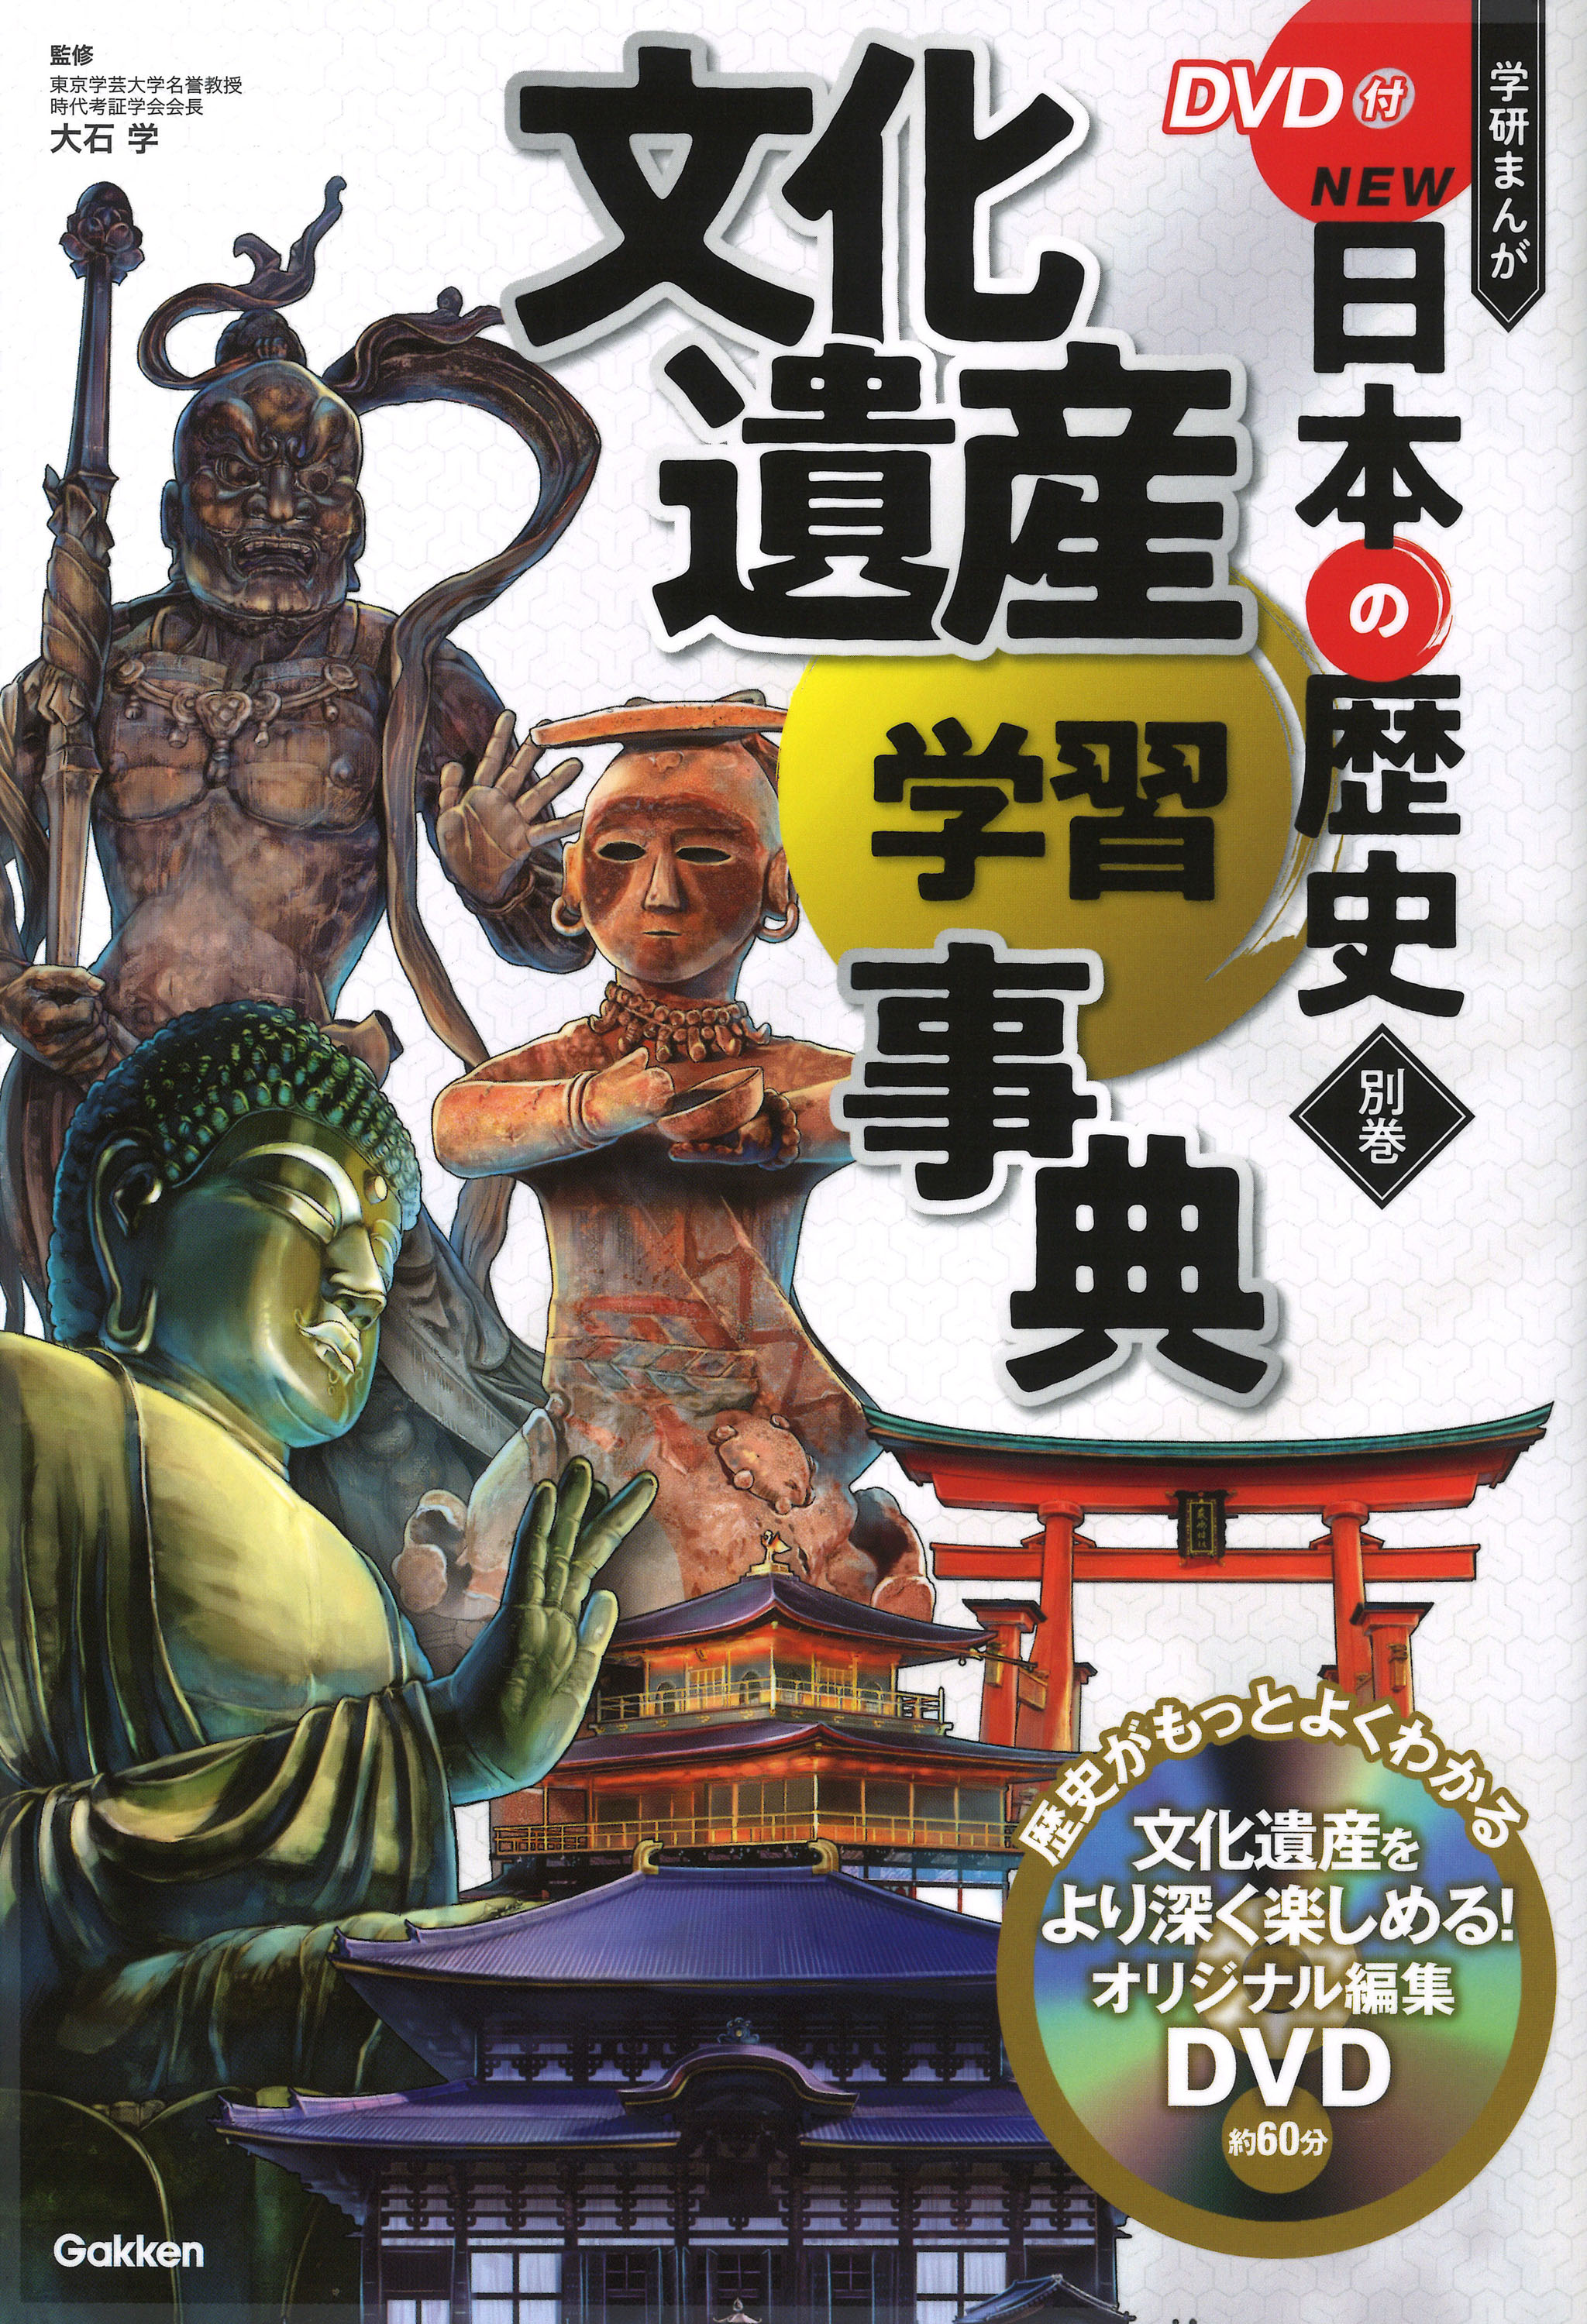 DVD付 学研まんが NEW日本の歴史 4大特典付き全14巻セット」発売 